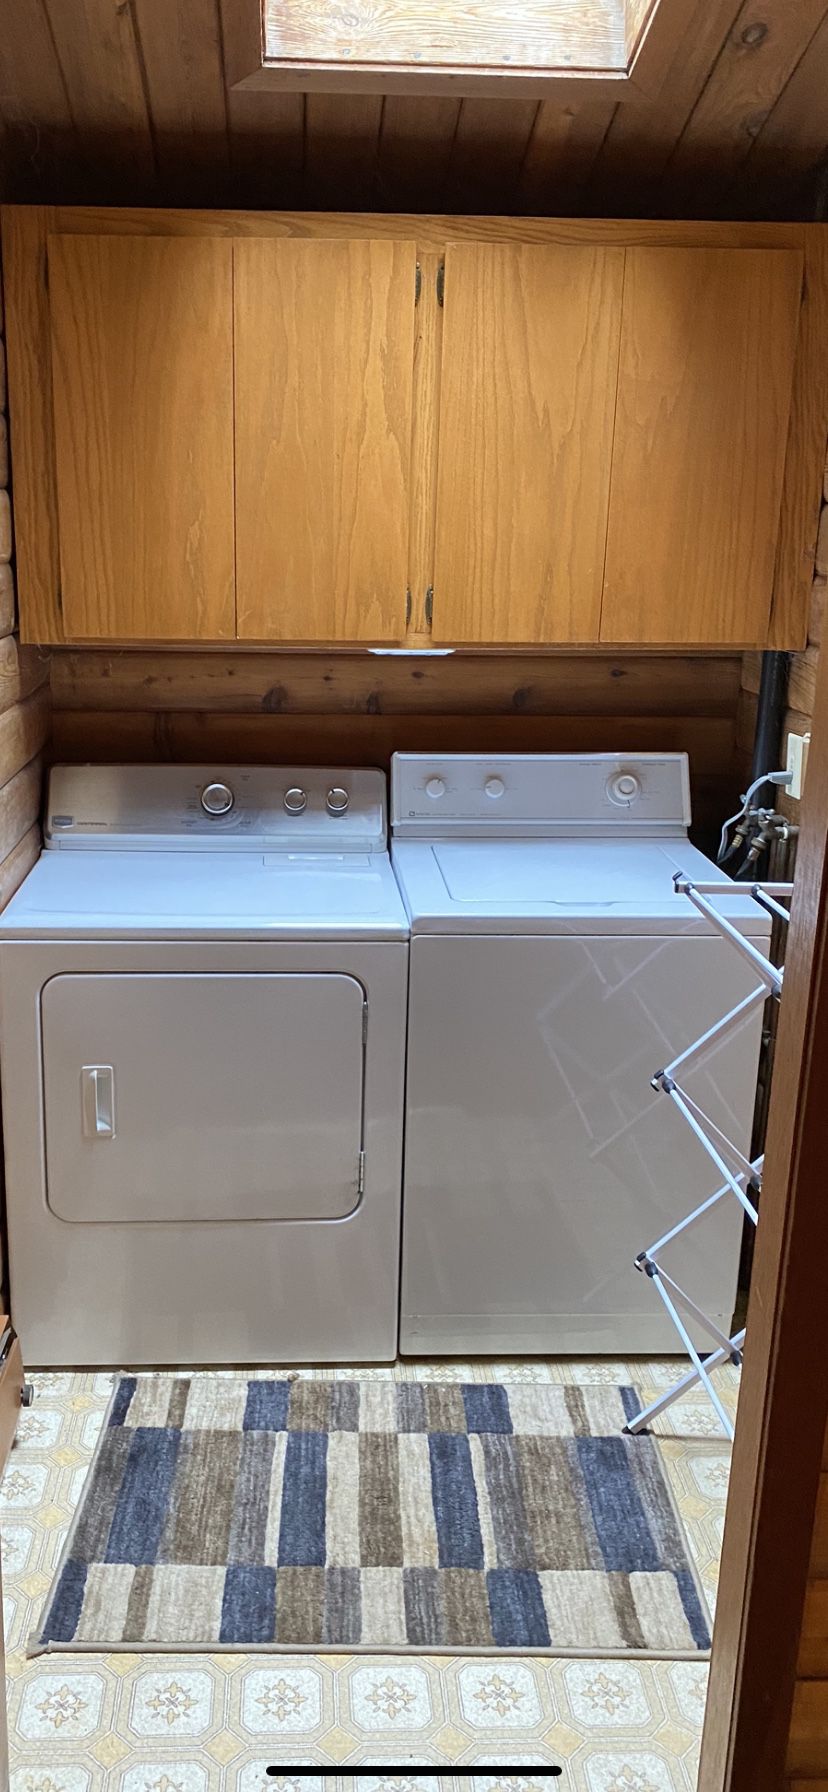 Maytag Washer / Dryer Set